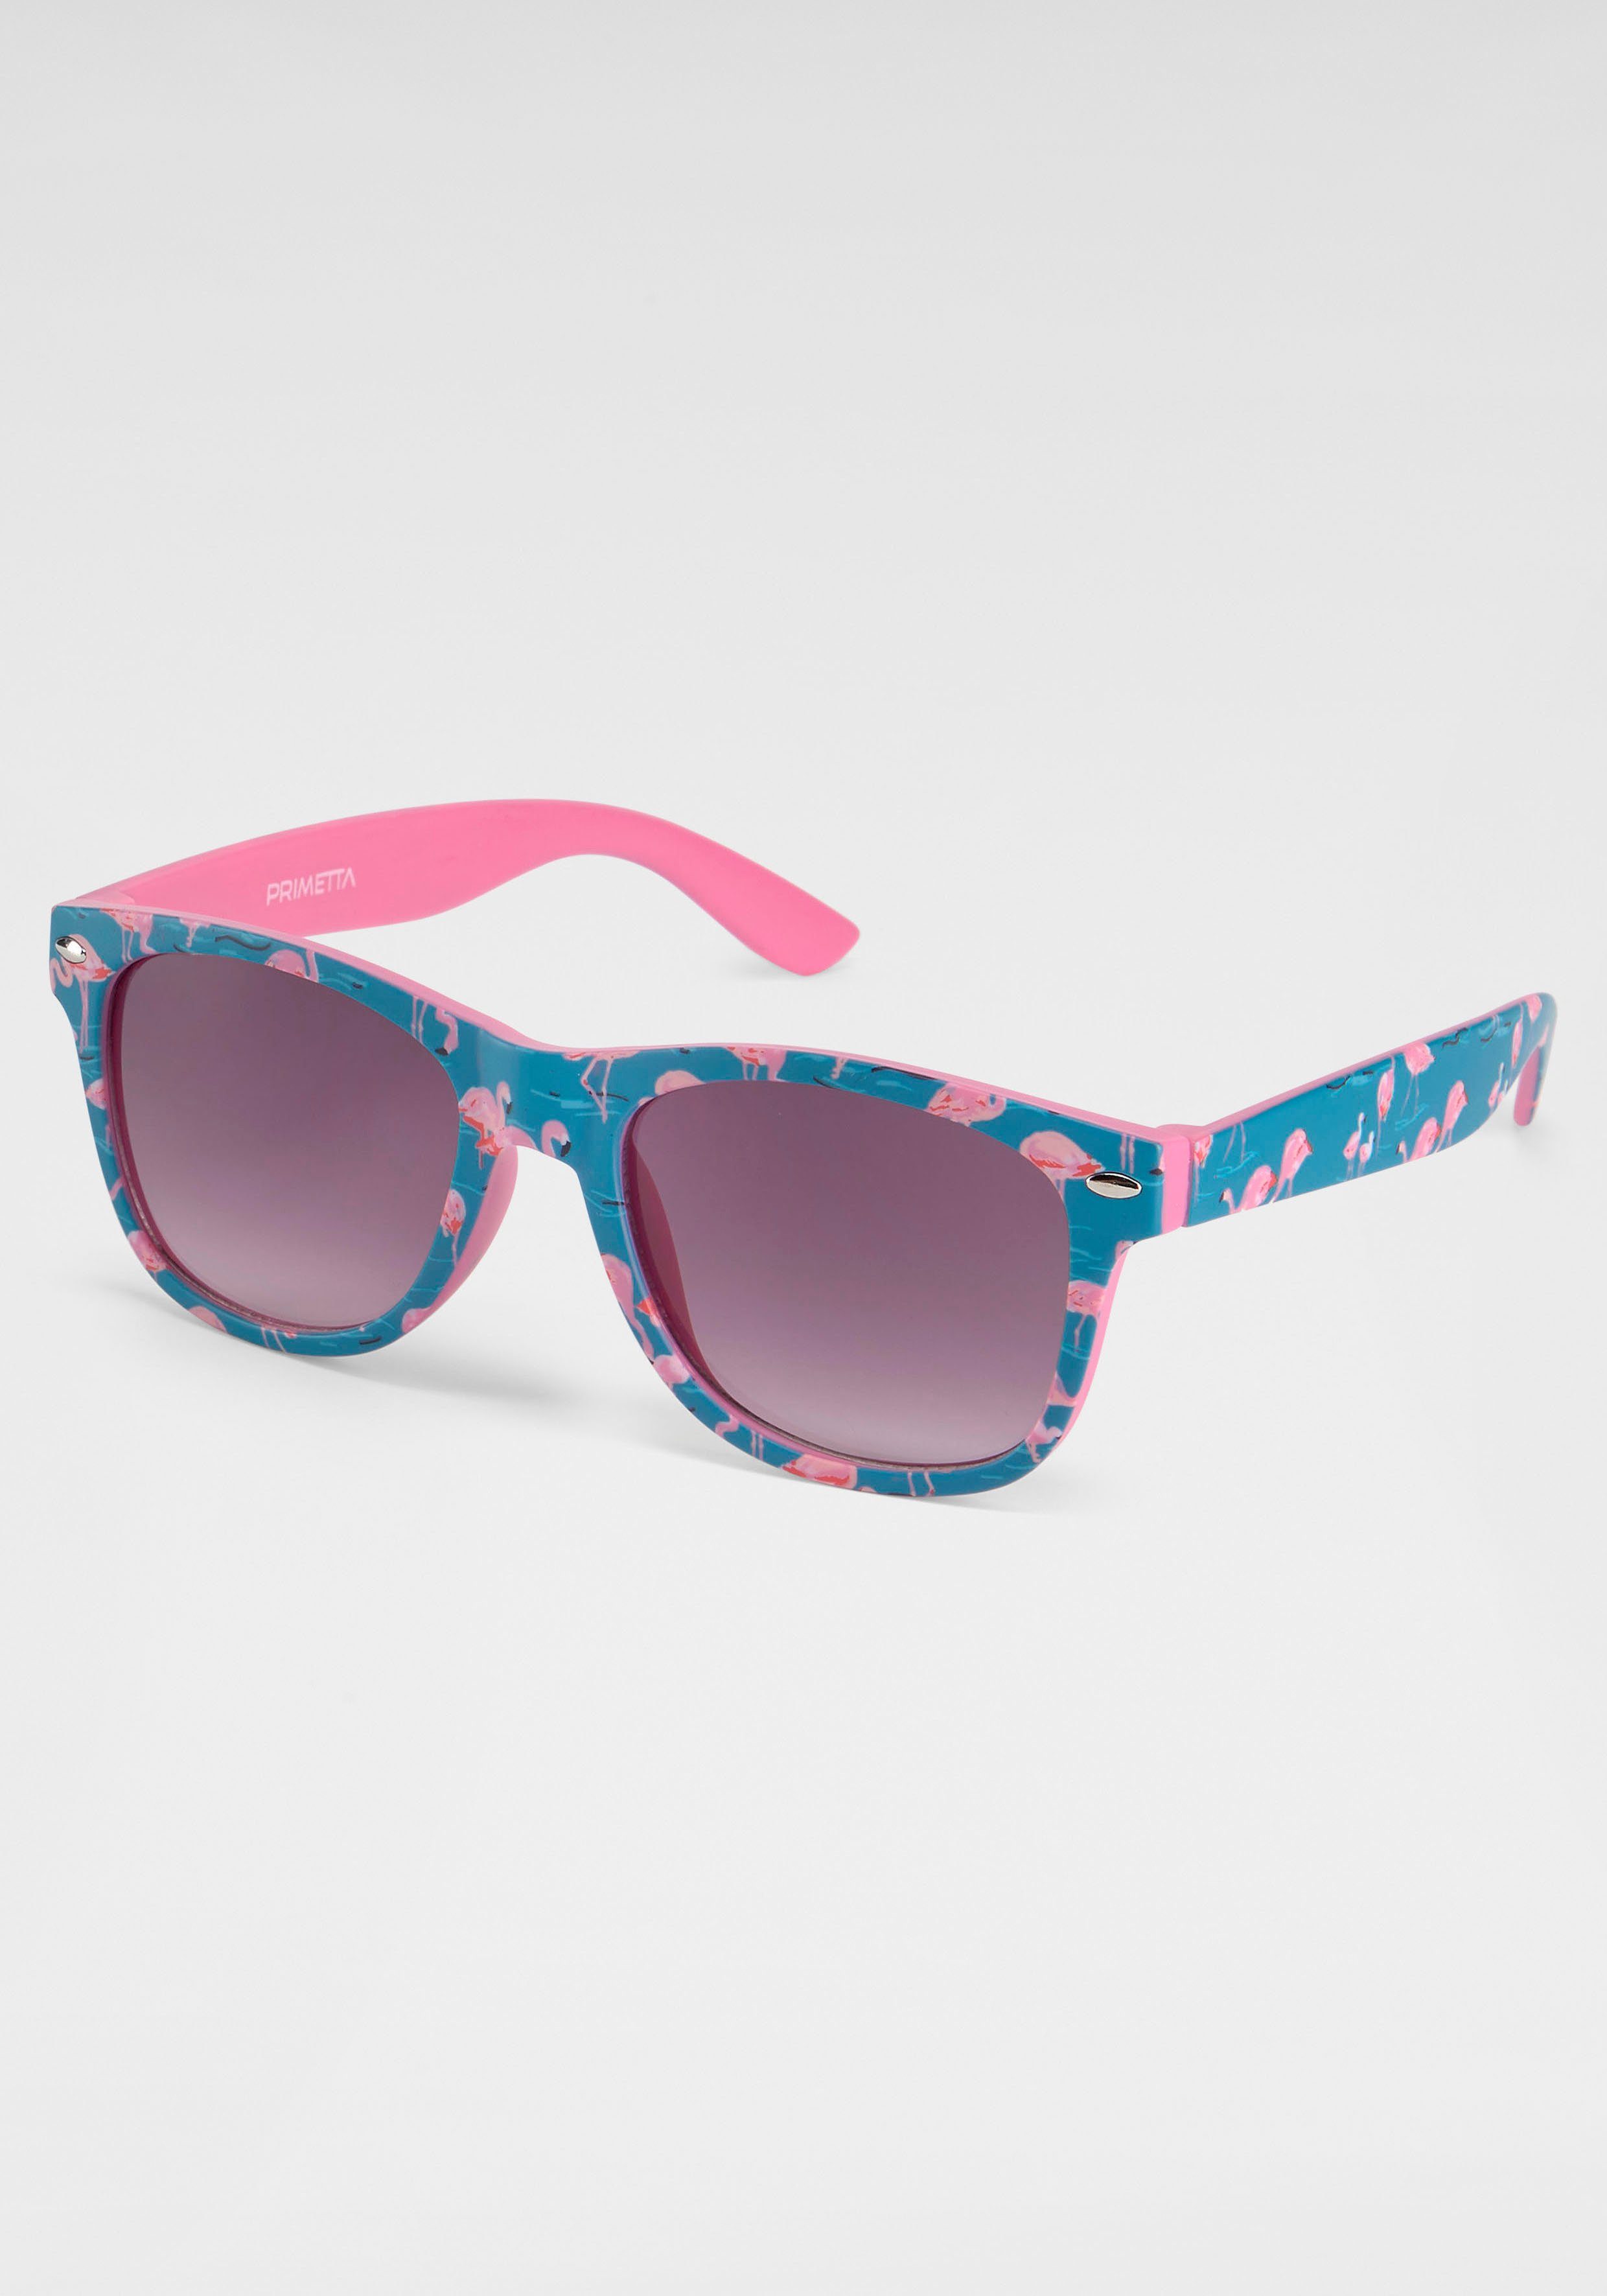 Bedruckte Sonnenbrillen online kaufen | OTTO | Sonnenbrillen